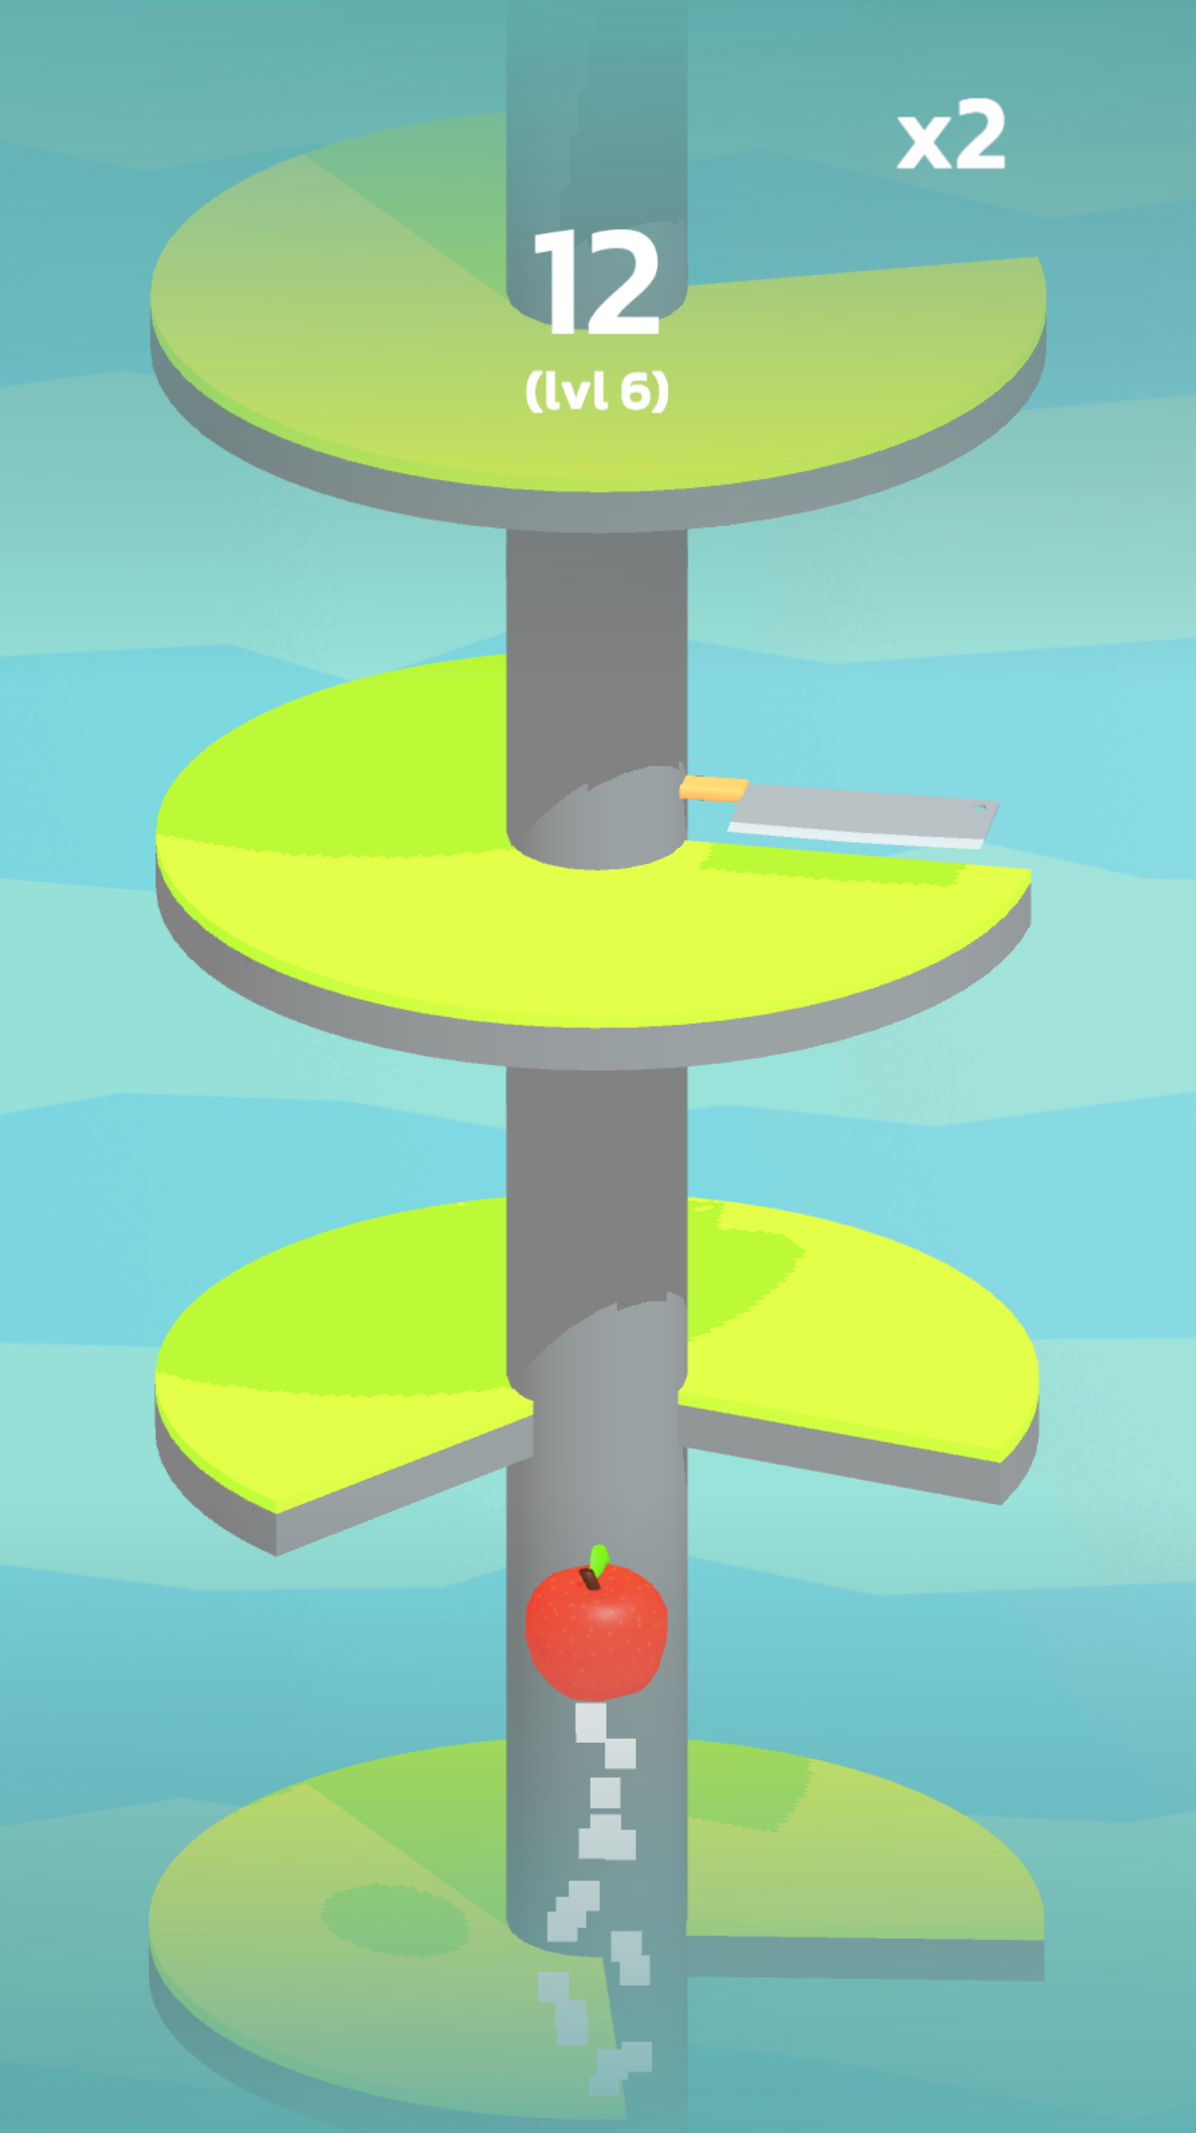 Rocket Fruit - Boost through platforms